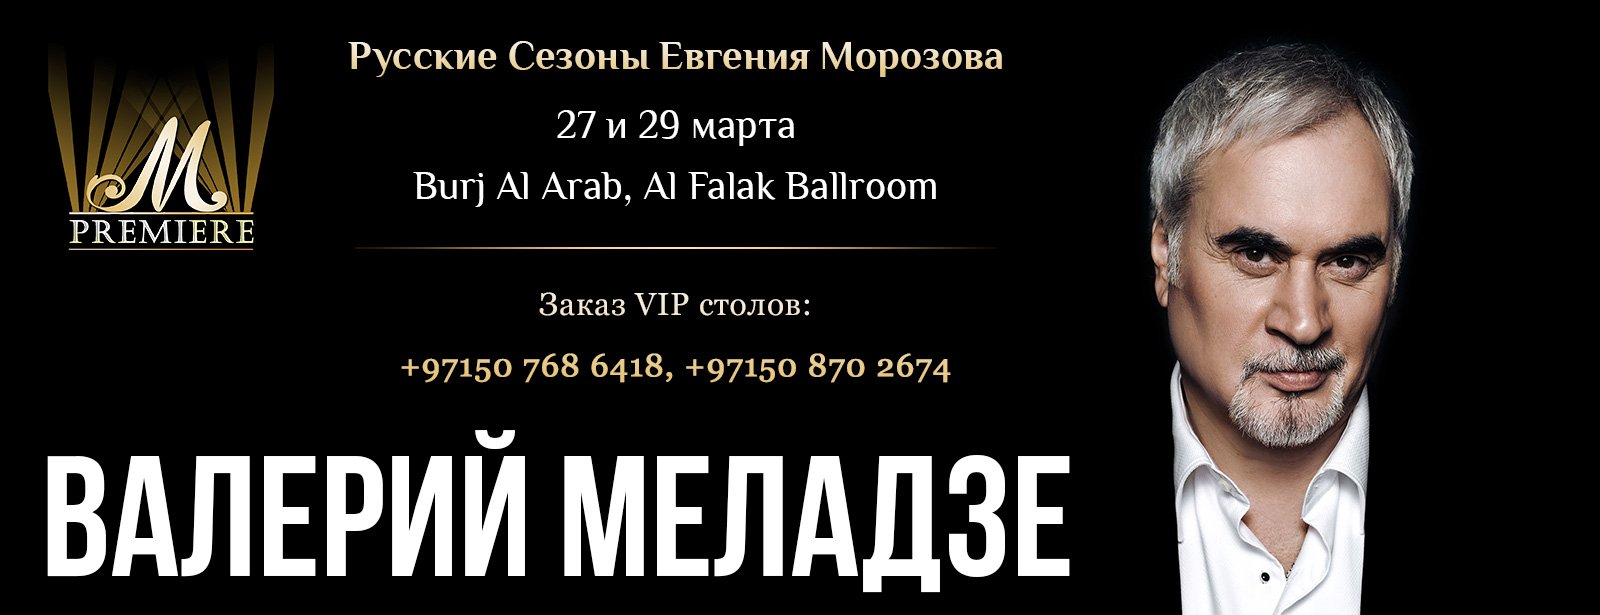 Valeriy Meladze Concert - Coming Soon in UAE